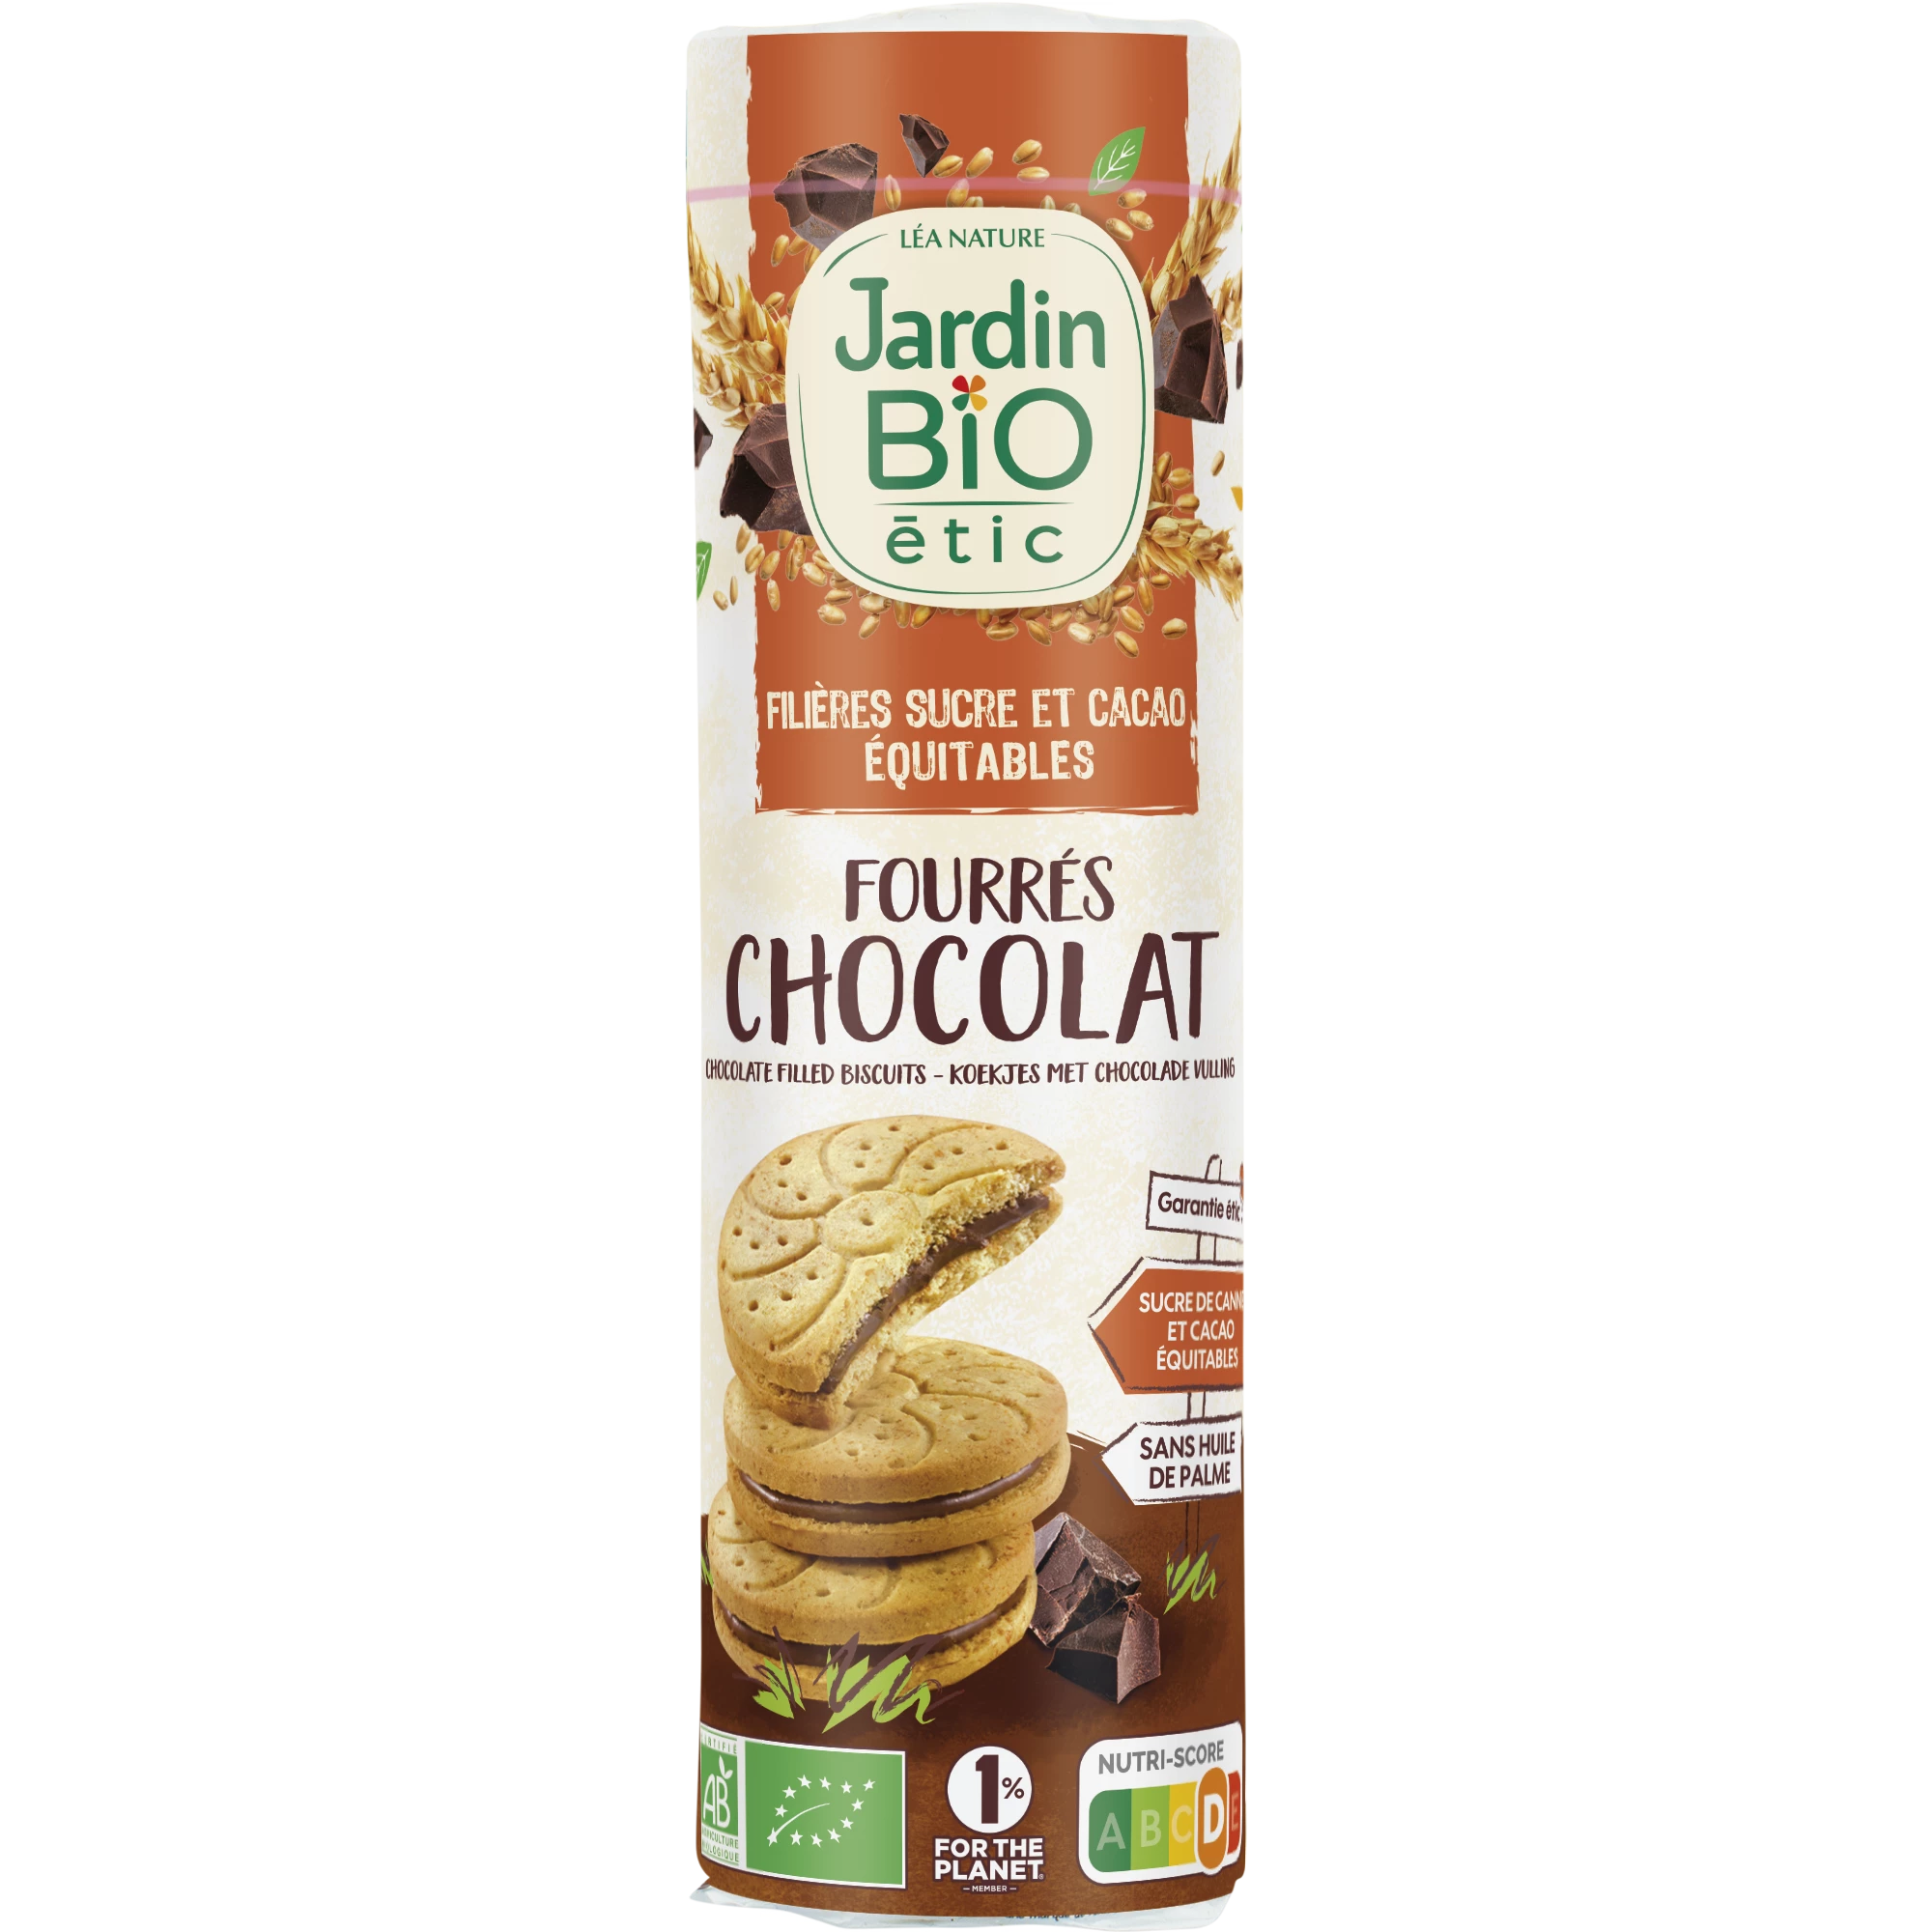 Met chocolade gevulde koekjes, 300 g, JARDIN Bio ETIC